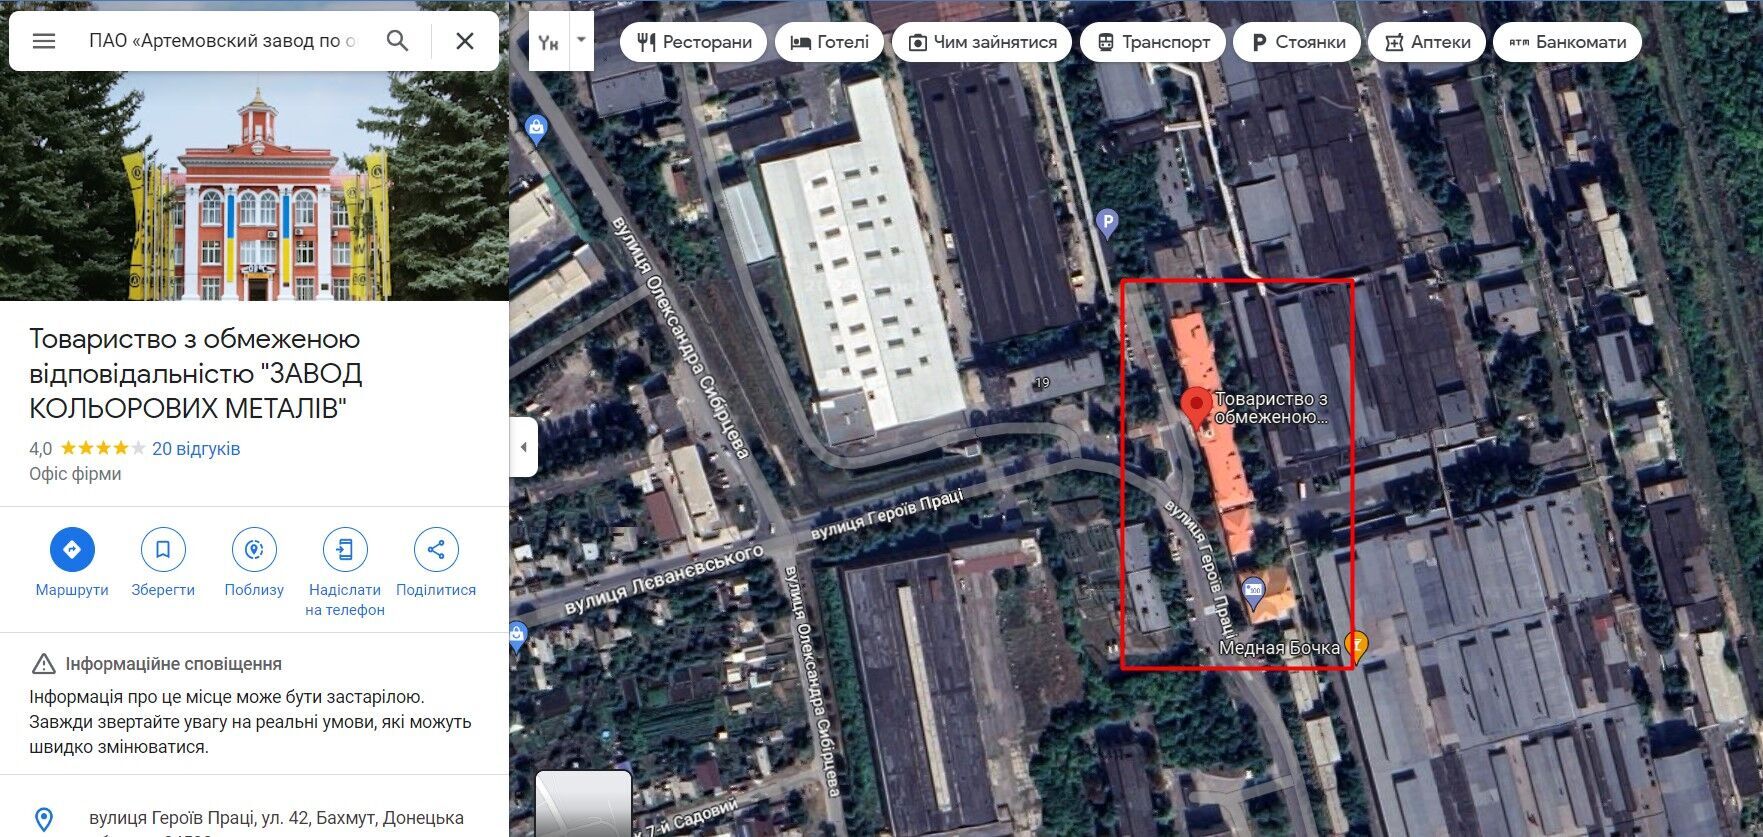 ООО ''Завод цветных металлов'' - месторасположение в Бахмуте Донецкой области